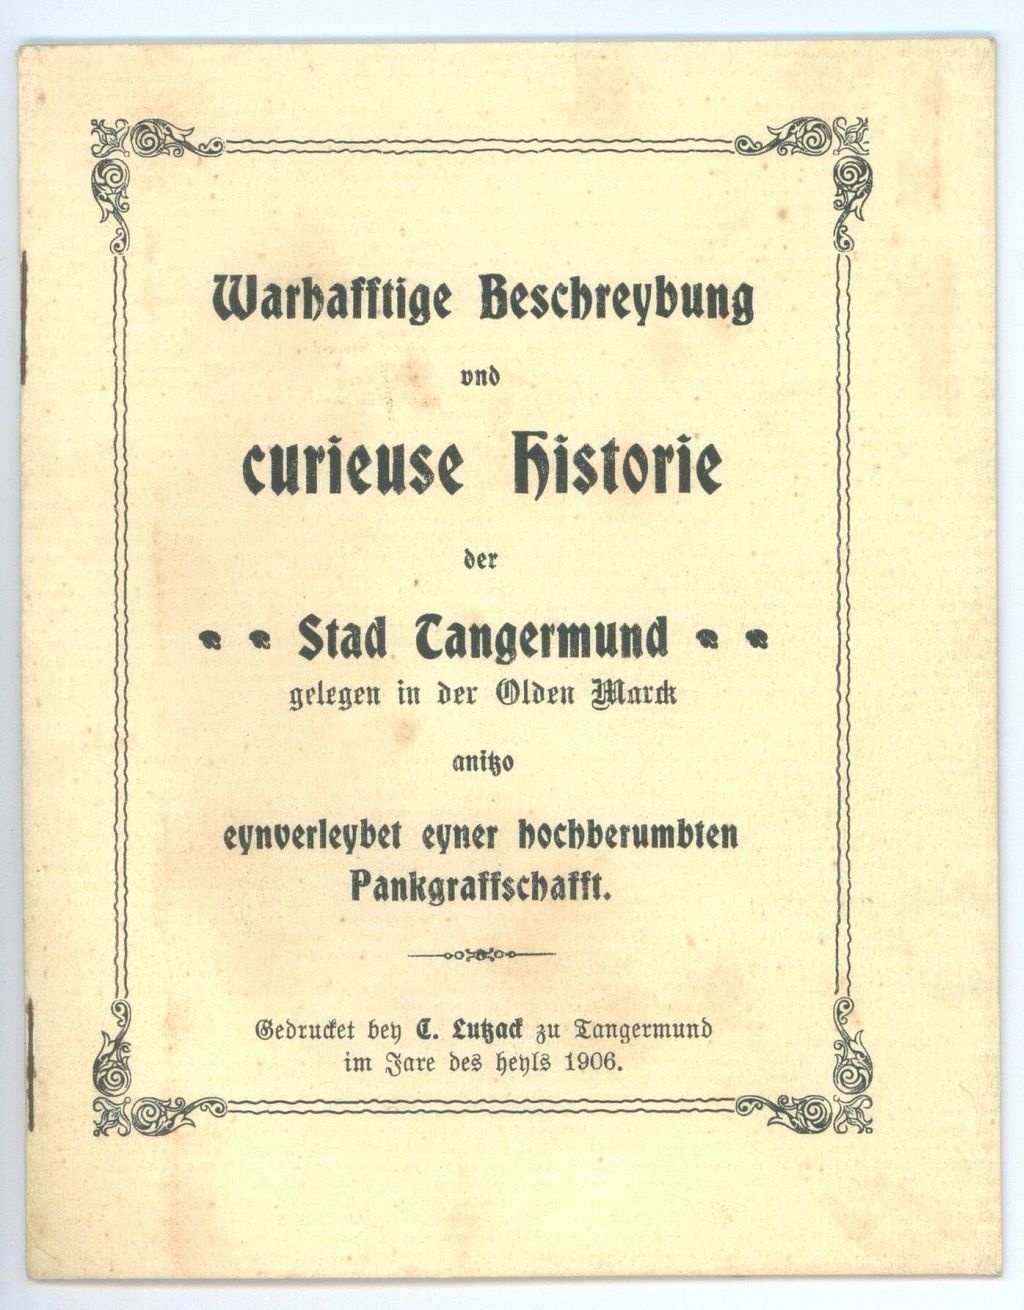 Warhafftige Beschreybung und curieuse Historie der Stad Tangermund (Städtische Museen Tangermünde CC BY-NC-SA)